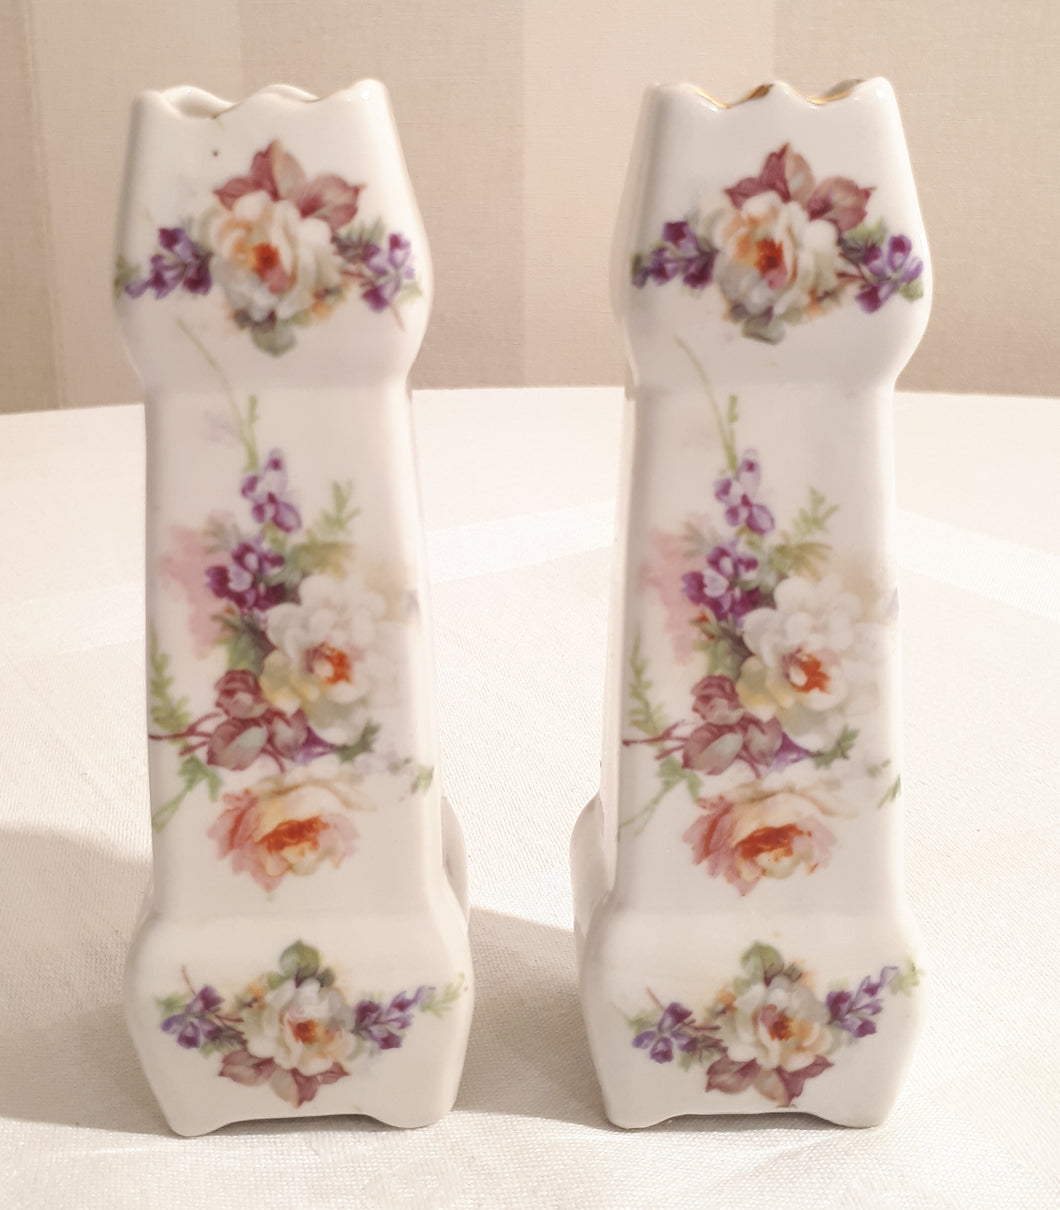 2 flowered vases